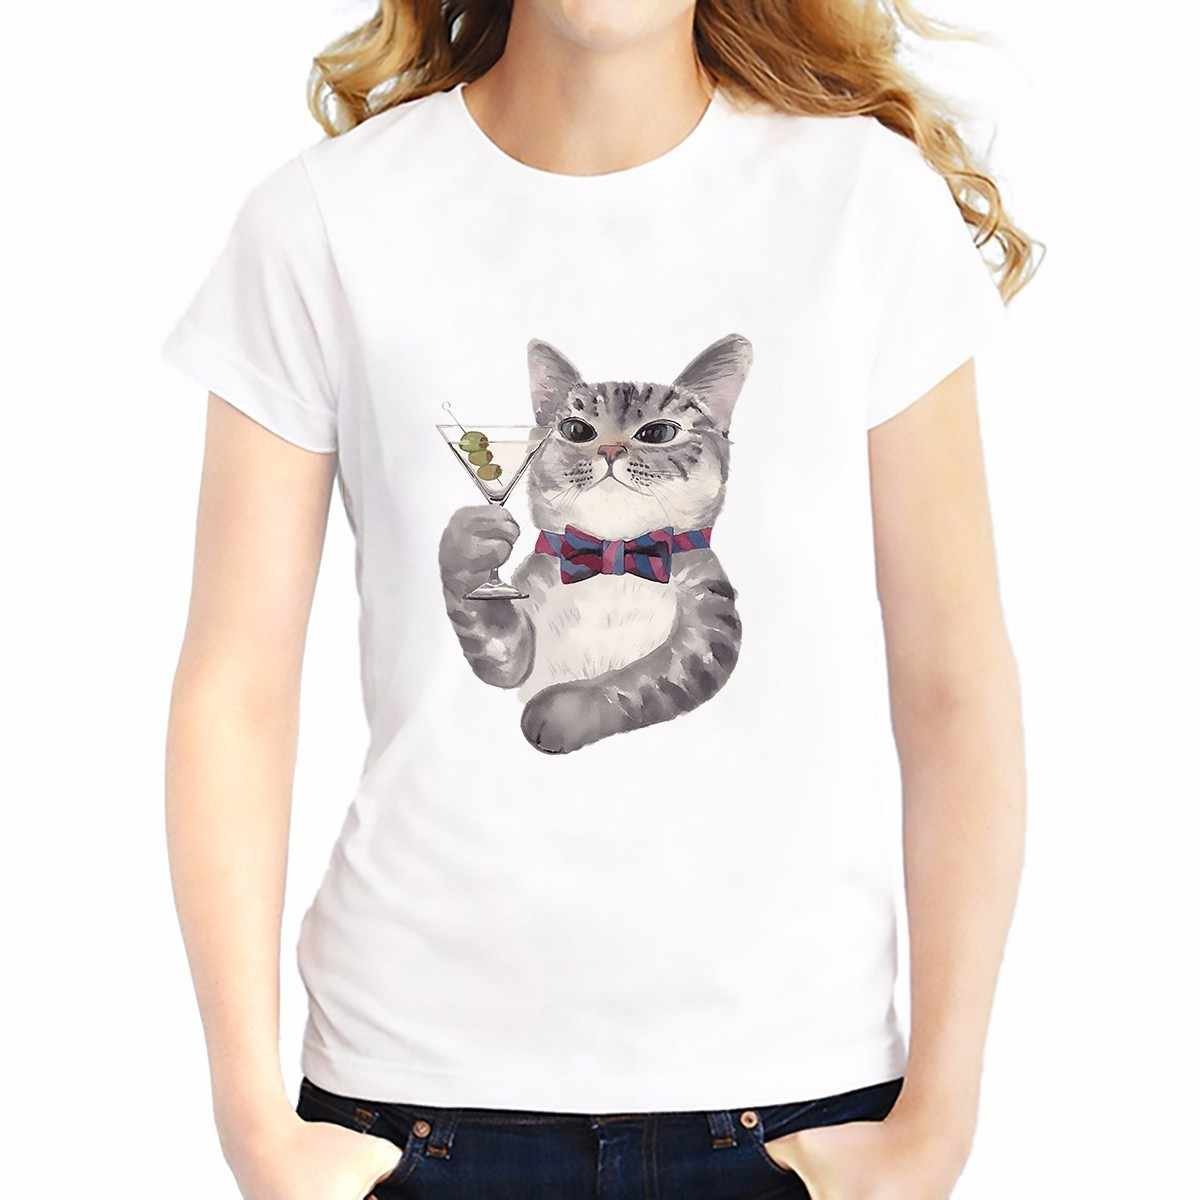 Милые котики на футболке. Милая футболка с котиком. Миленький котик на футболке. Кастом футболки милый с котиком.